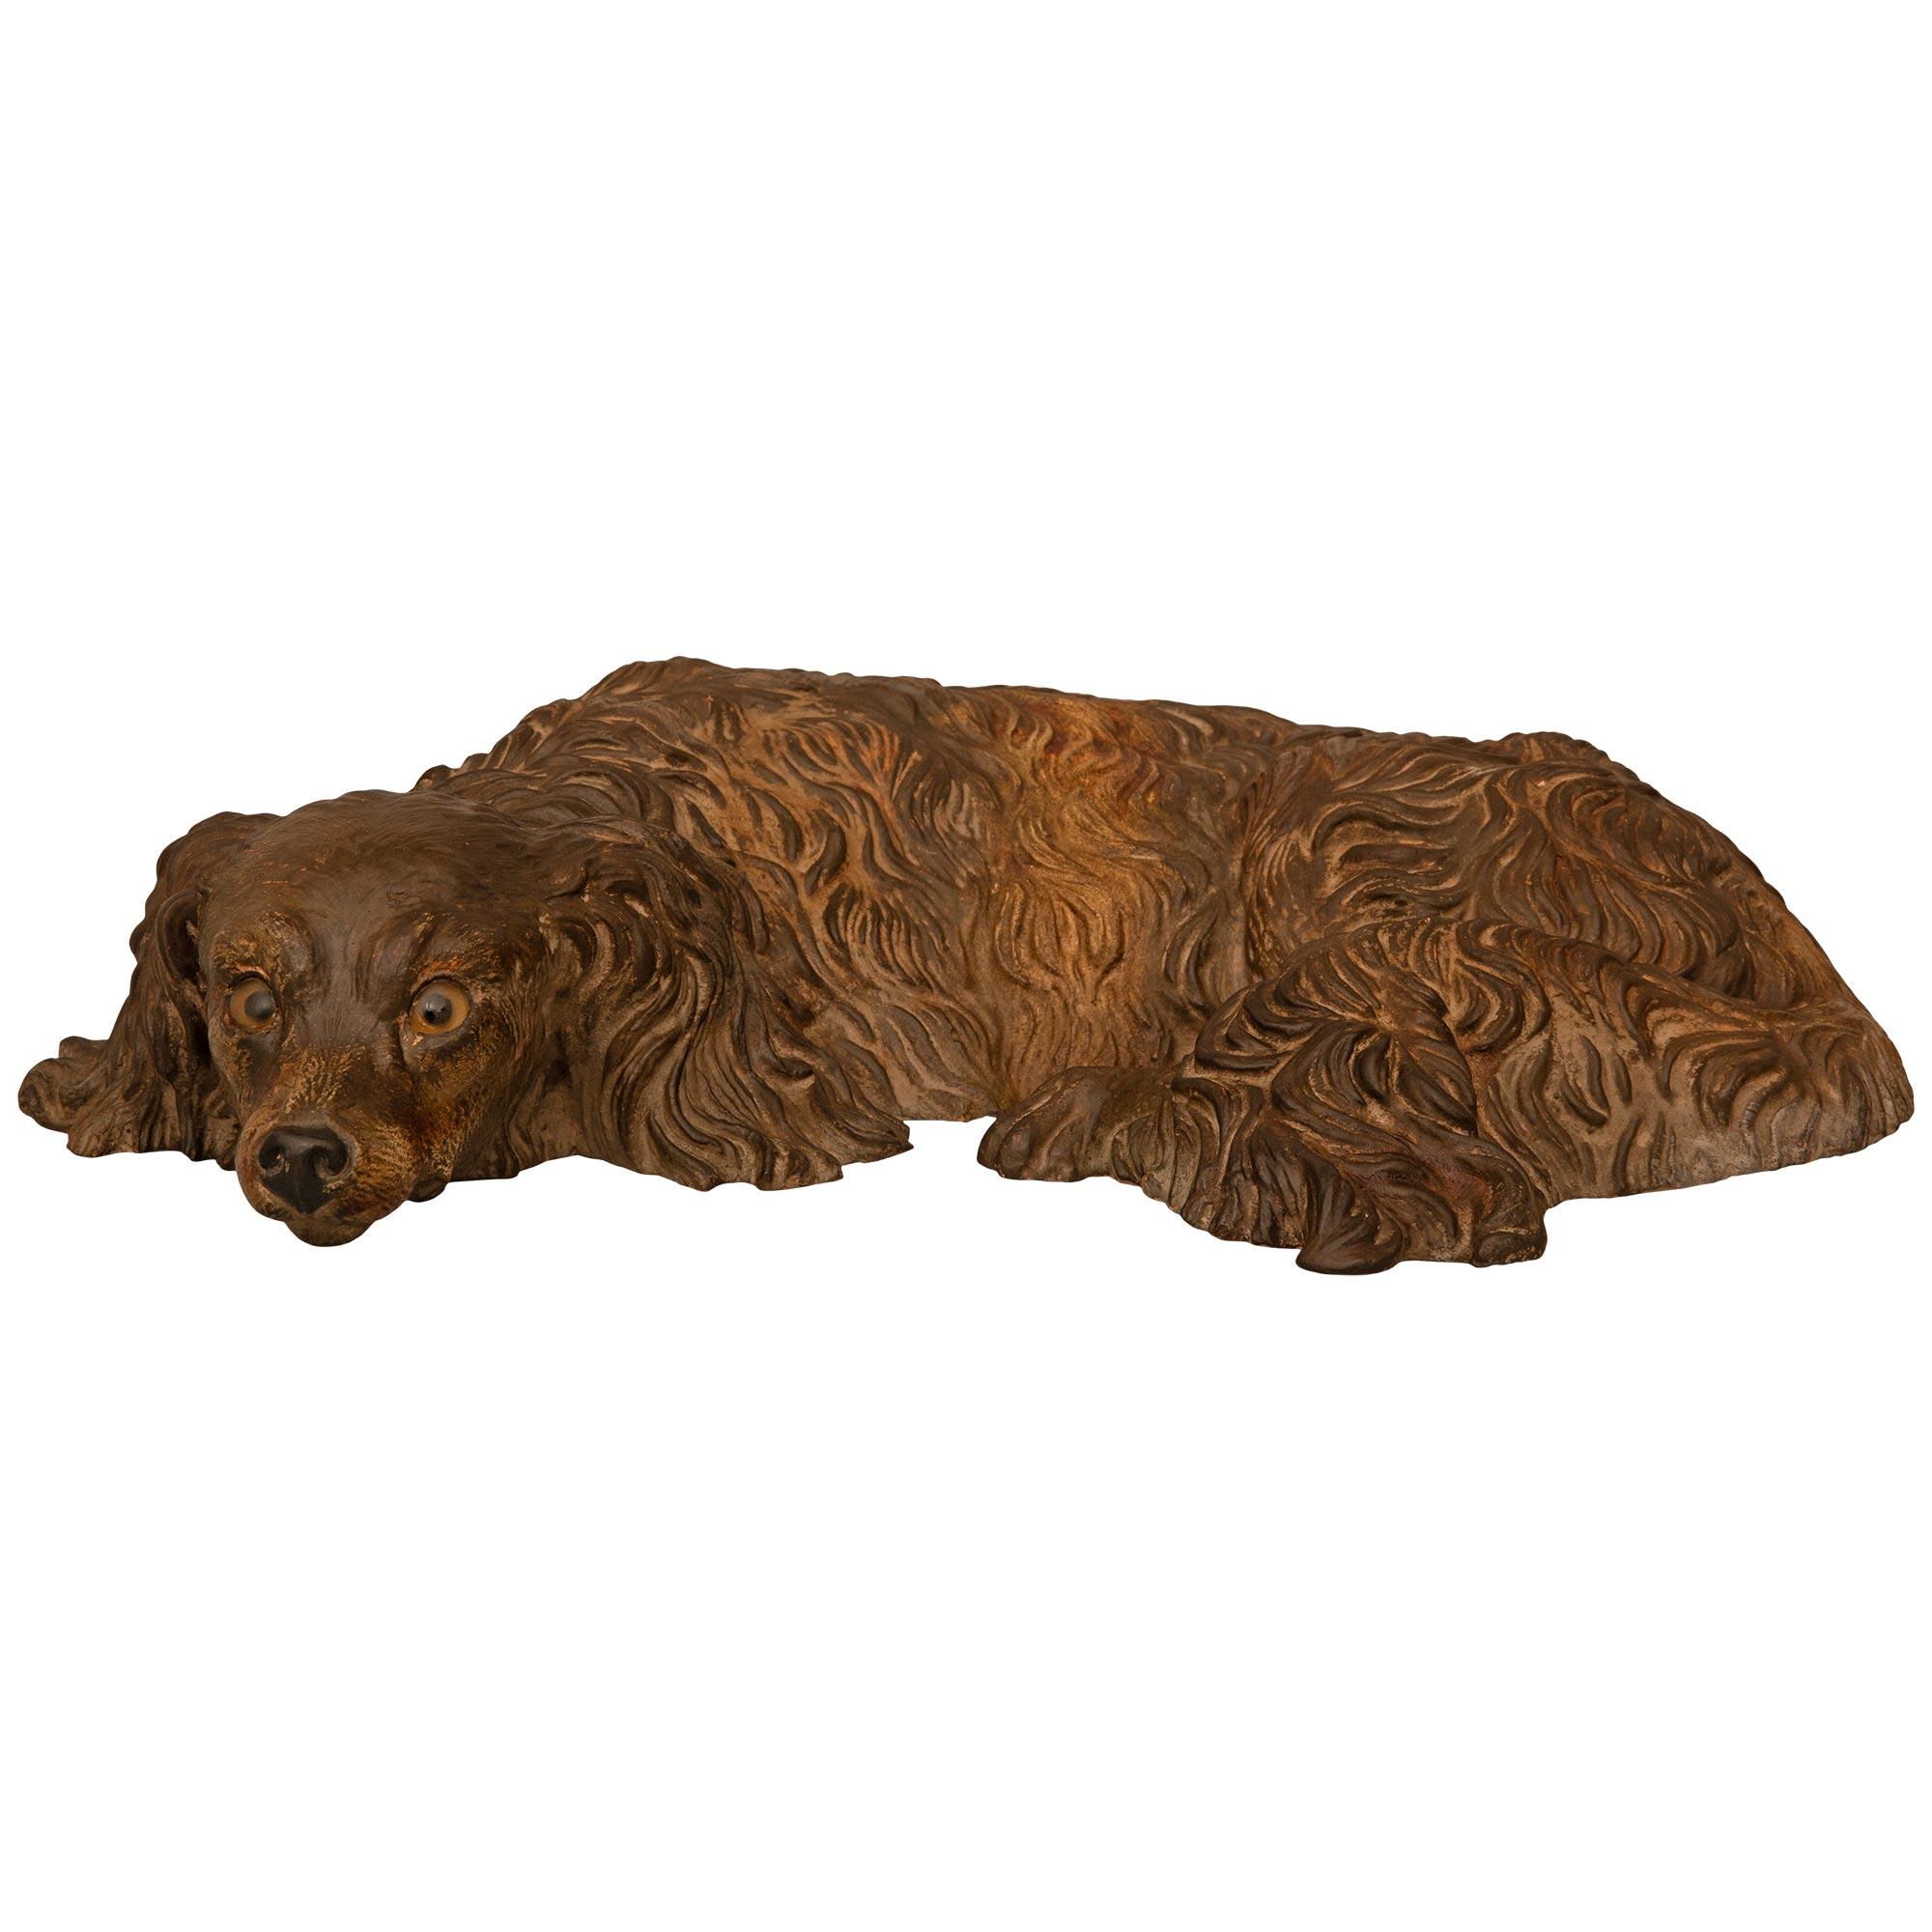 Une statue de chien en terre cuite du 19e siècle, merveilleusement décorative et des plus charmantes. Le petit épagneul anglais est couché avec une expression exquise et une fourrure étalée. Le chien a un regard accueillant et un visage